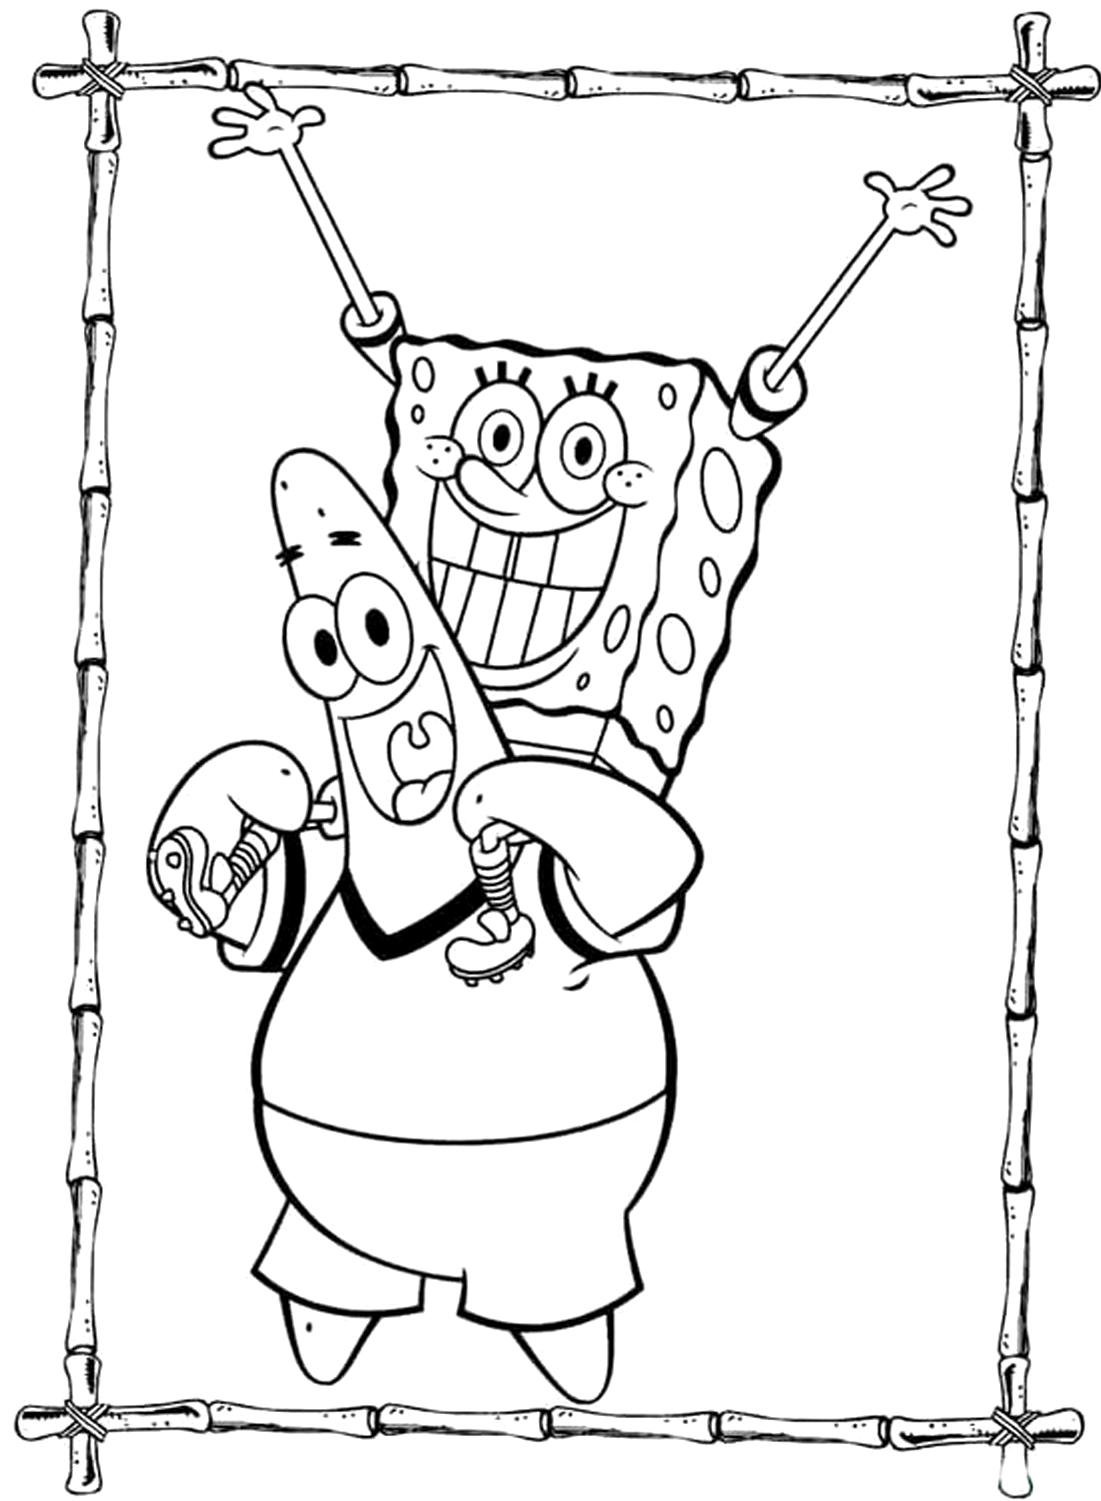 Fun Spongebob Squarepants Color Sheet